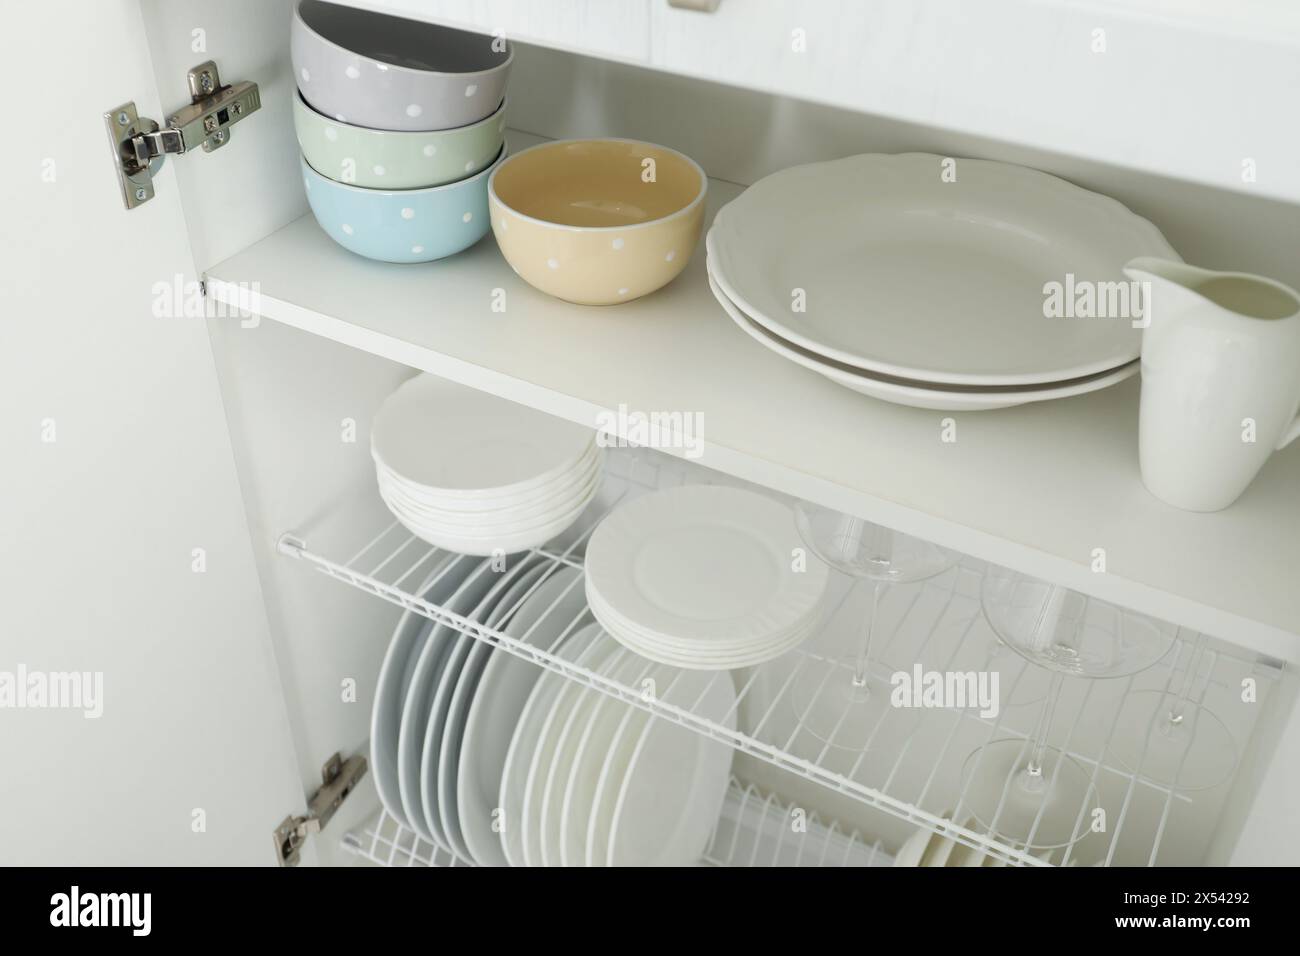 Reinigen Sie Teller, Schüsseln und Gläser auf den Regalen im Schrank im Innenbereich Stockfoto